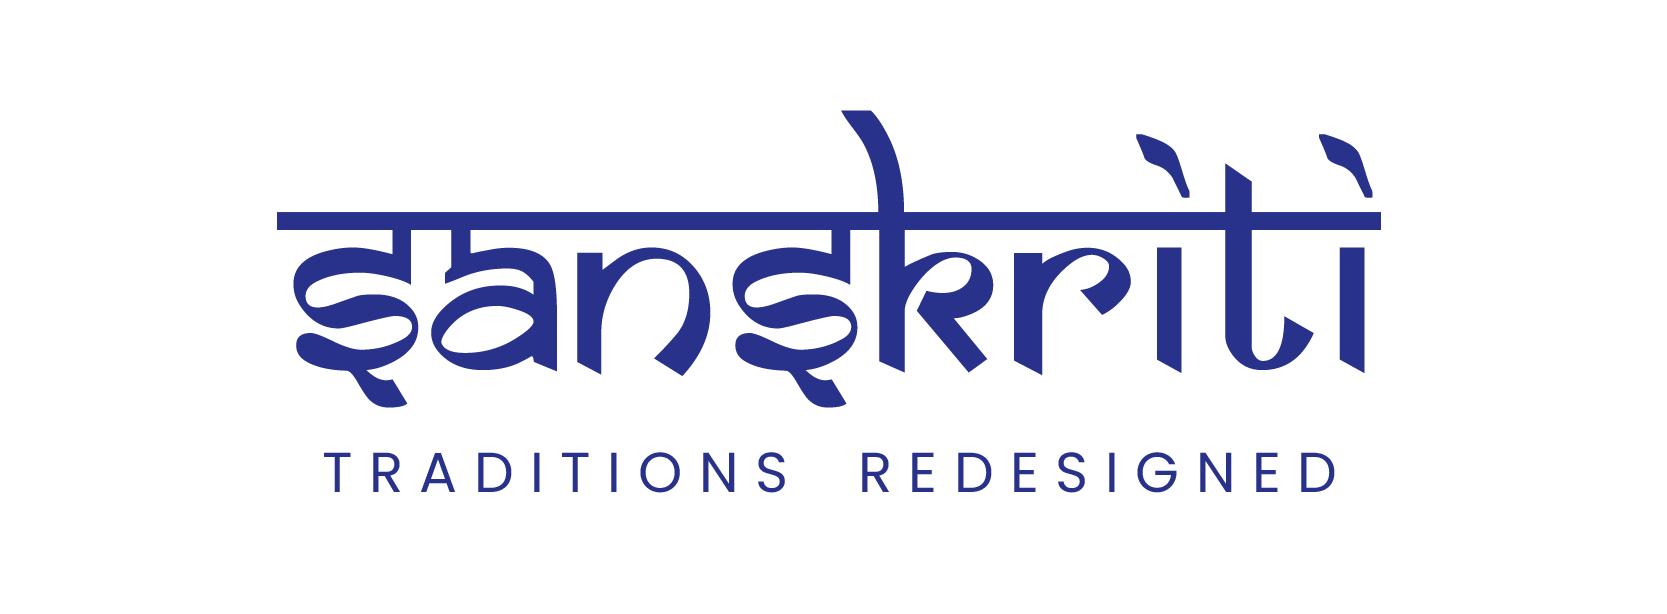 Sanskriti